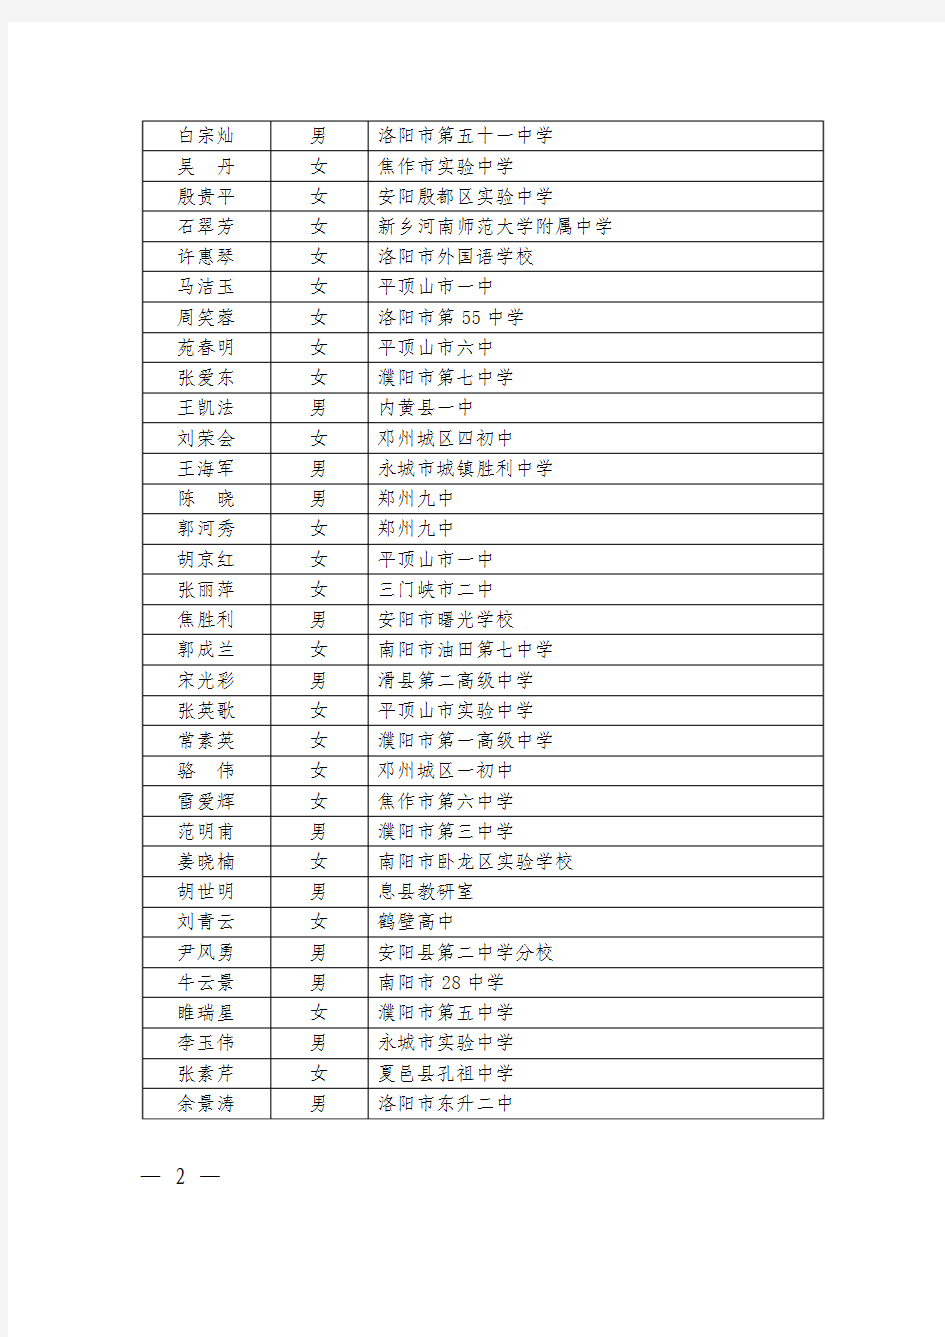 河南省第五批中学名师名单